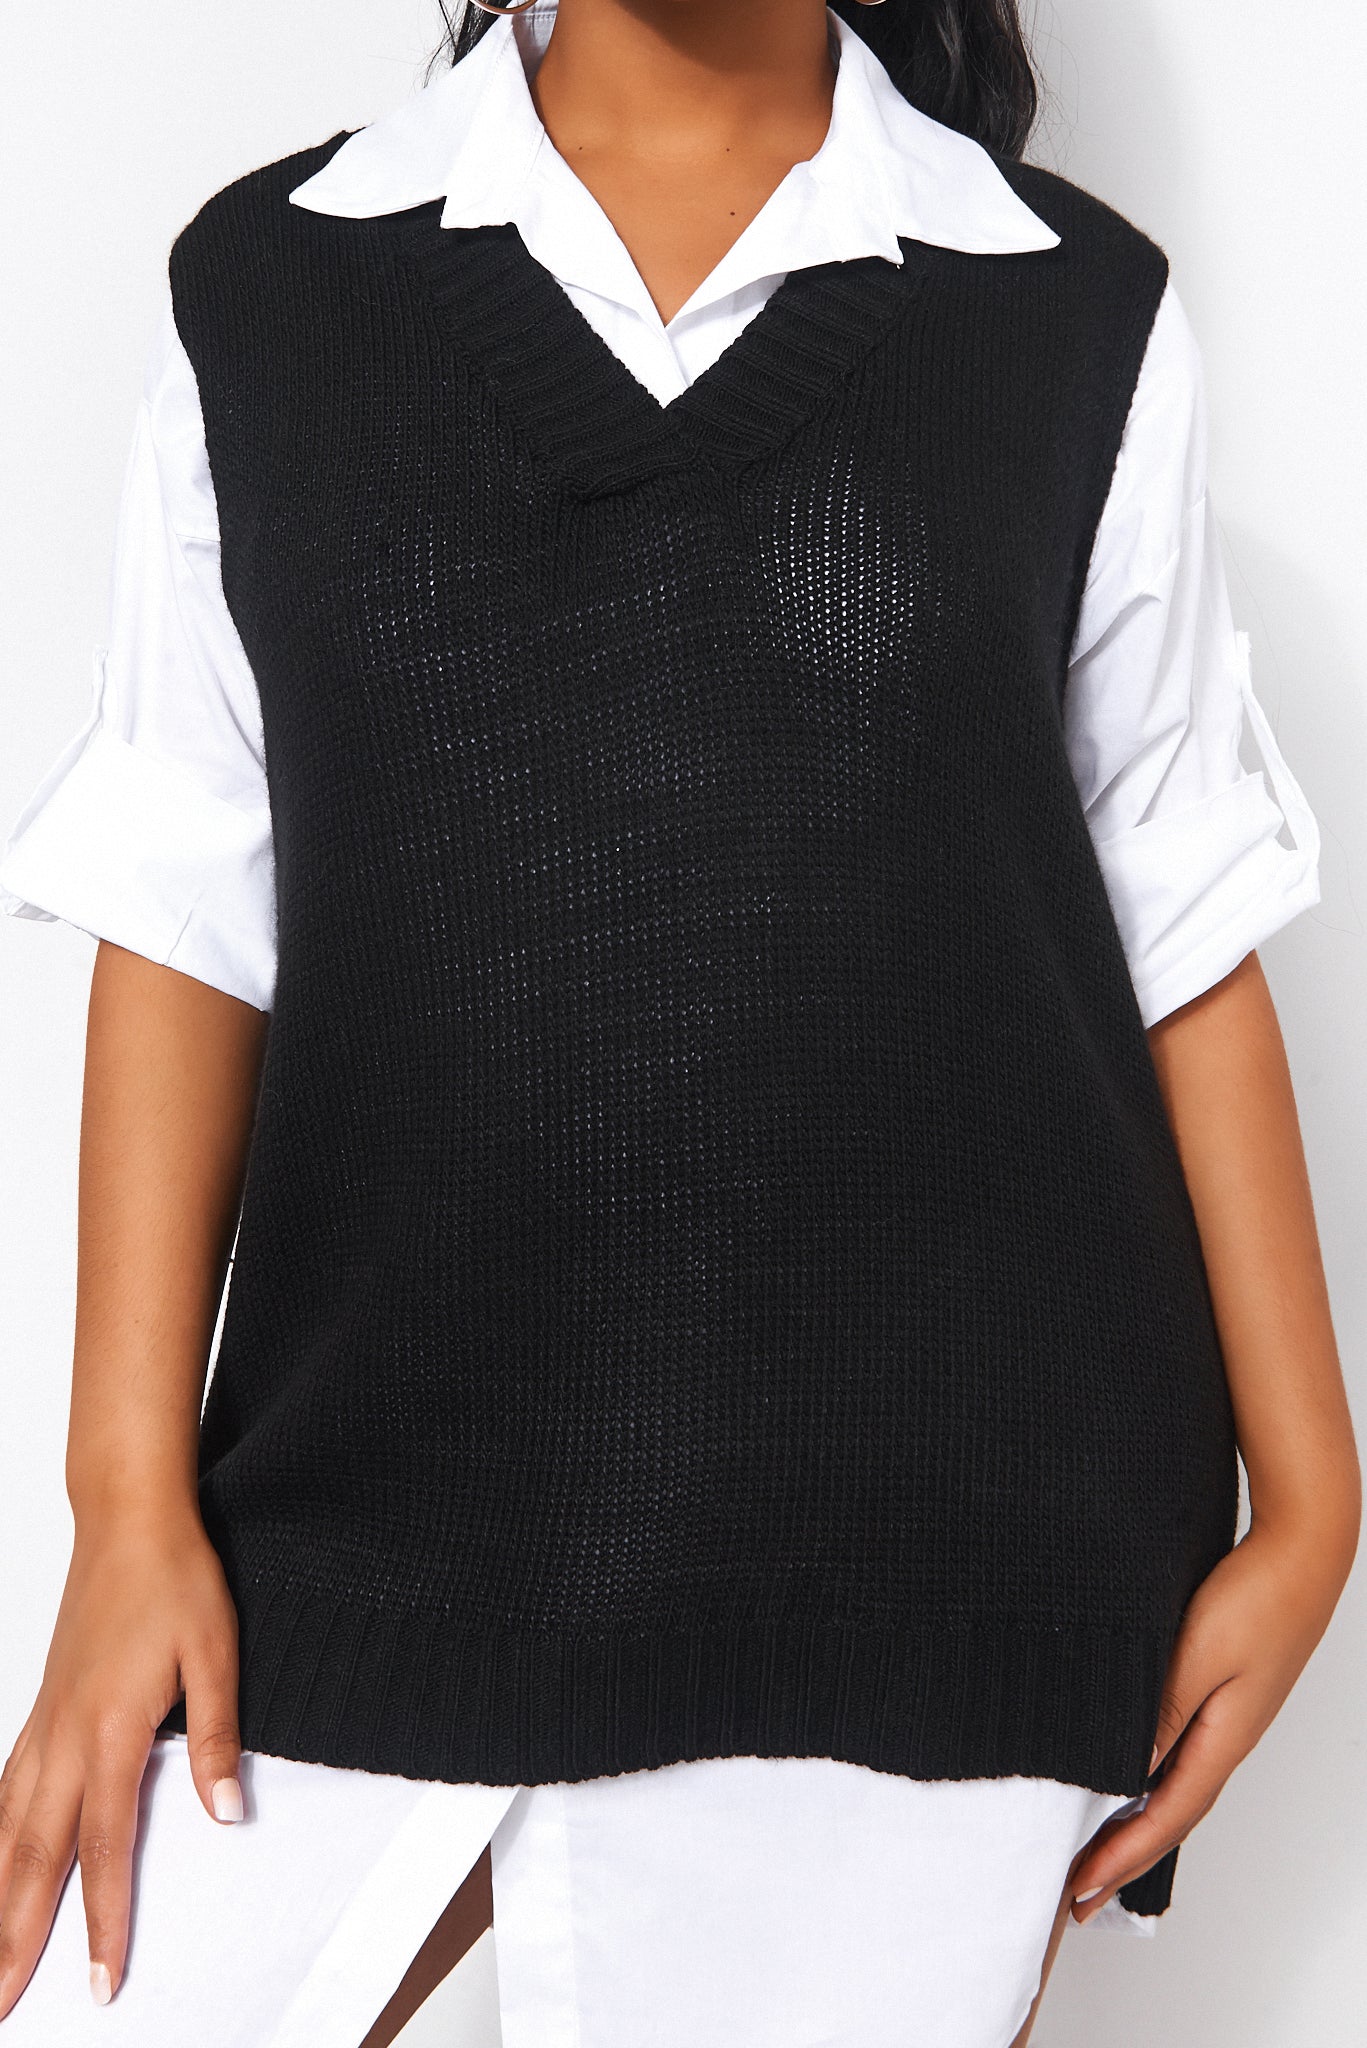 Black V Neck Knitted Vest Top